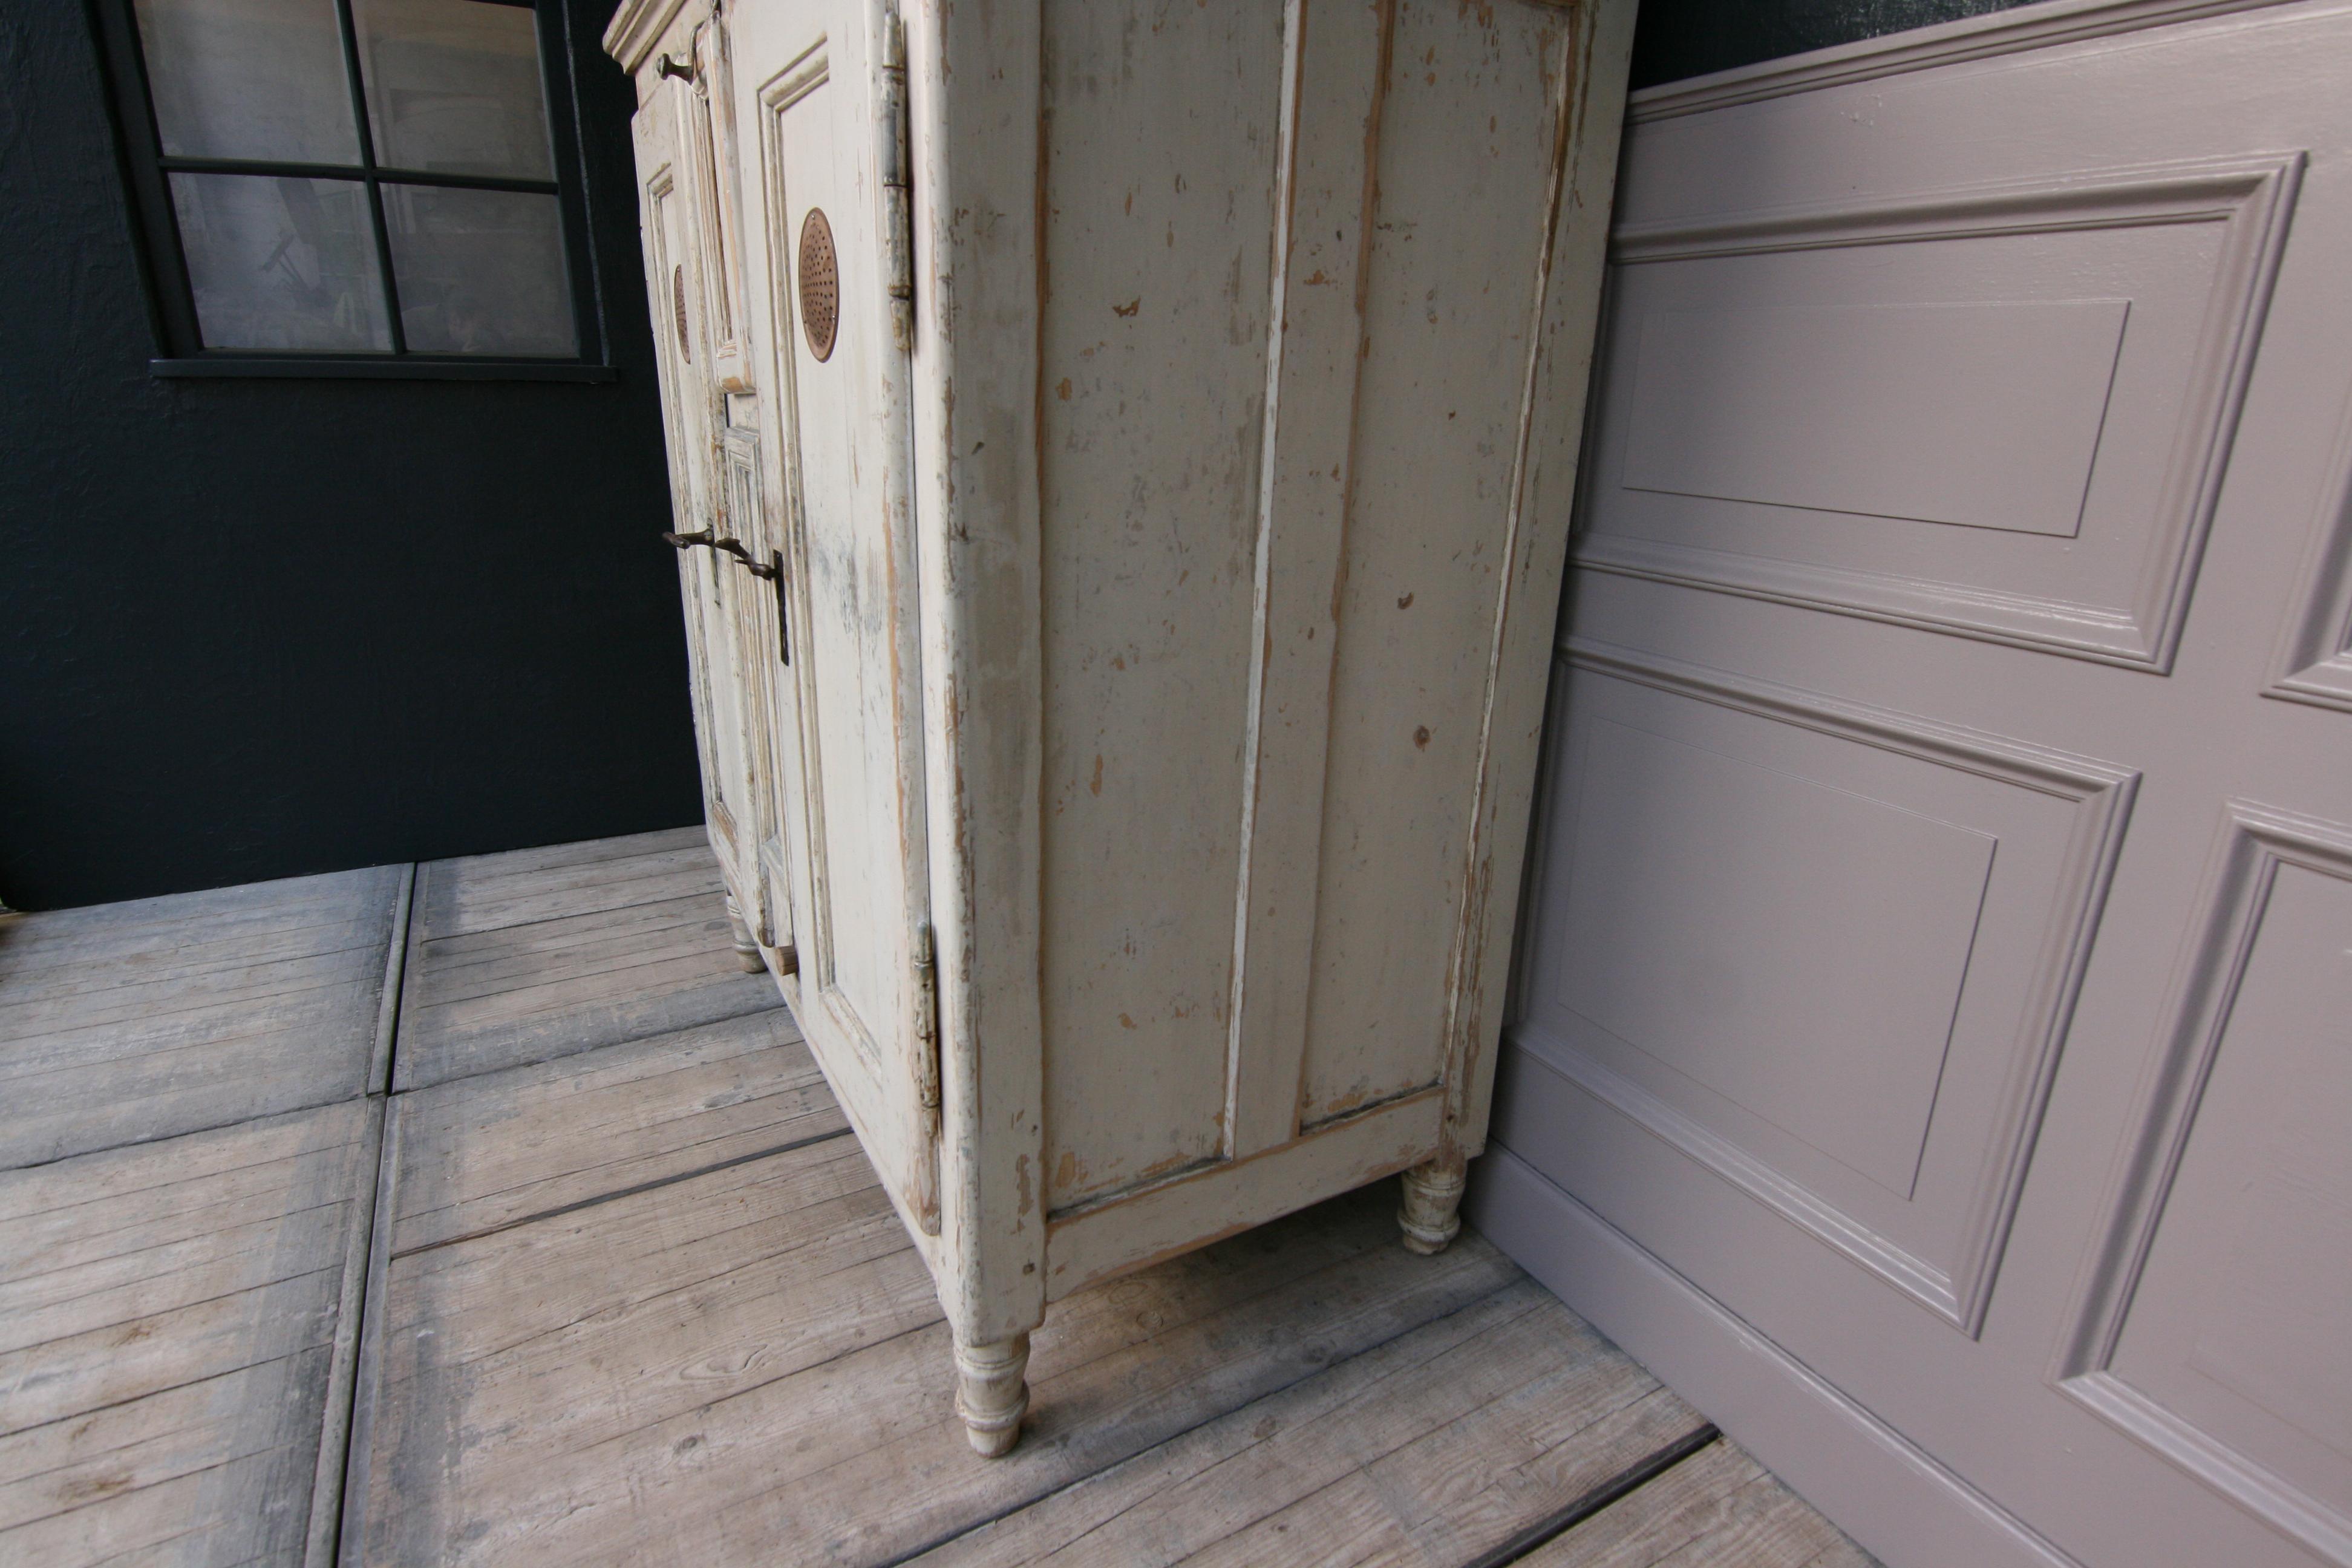 19th Century Refrigerator or Ice Box Cabinet in Original Cream Paint 4